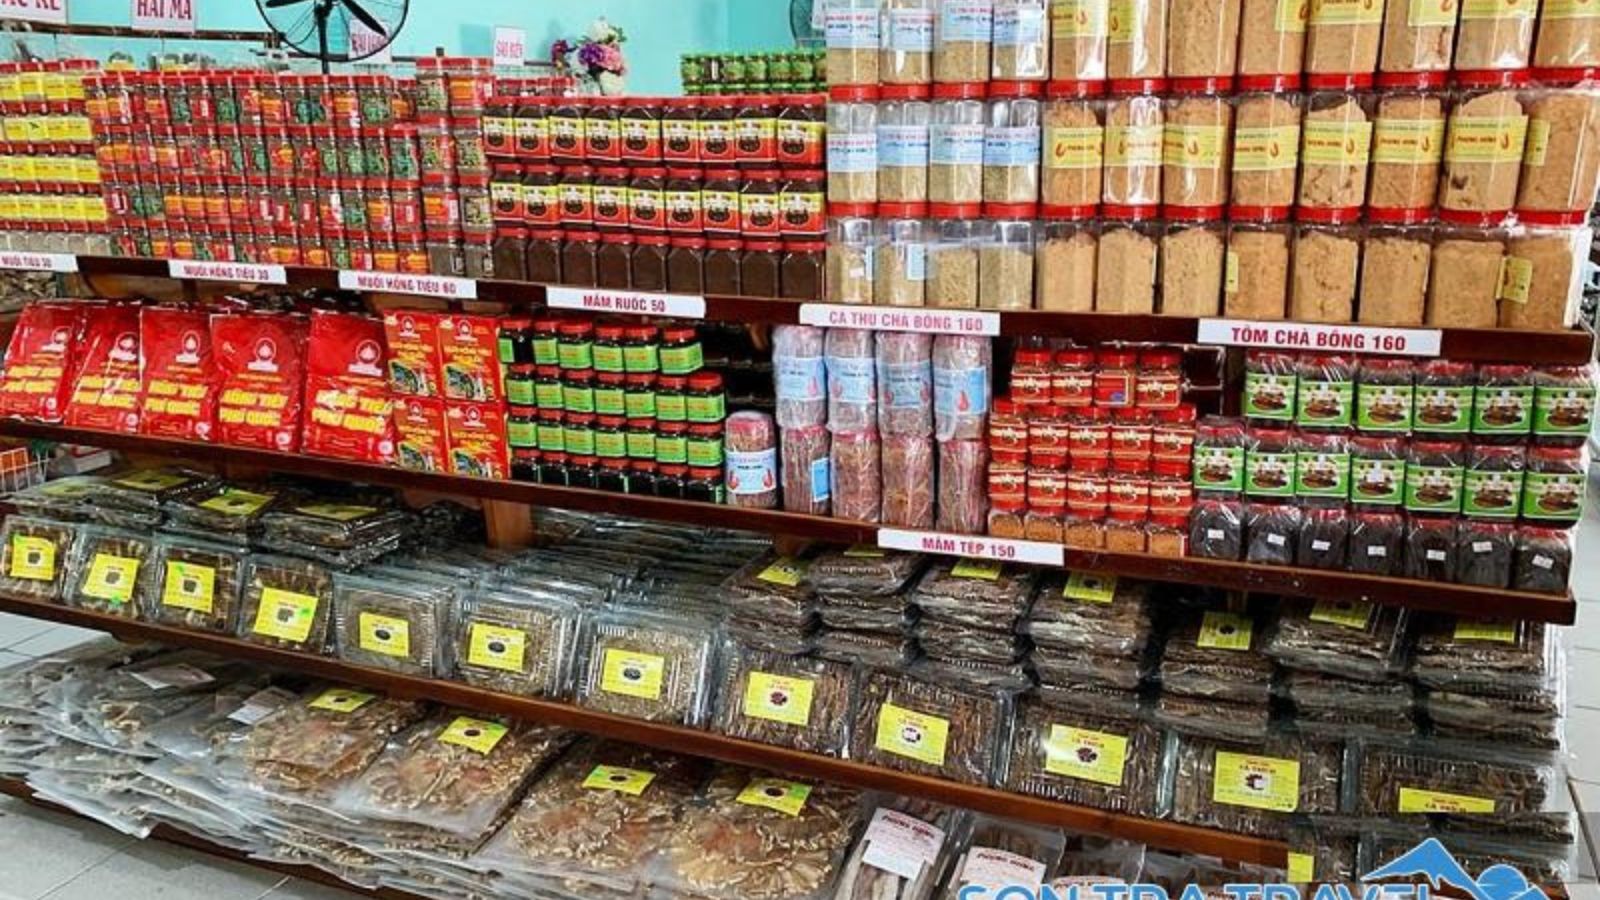 Thực phẩm Mỹ Hương – Địa chỉ bán đặc sản Đà Nẵng giá rẻ